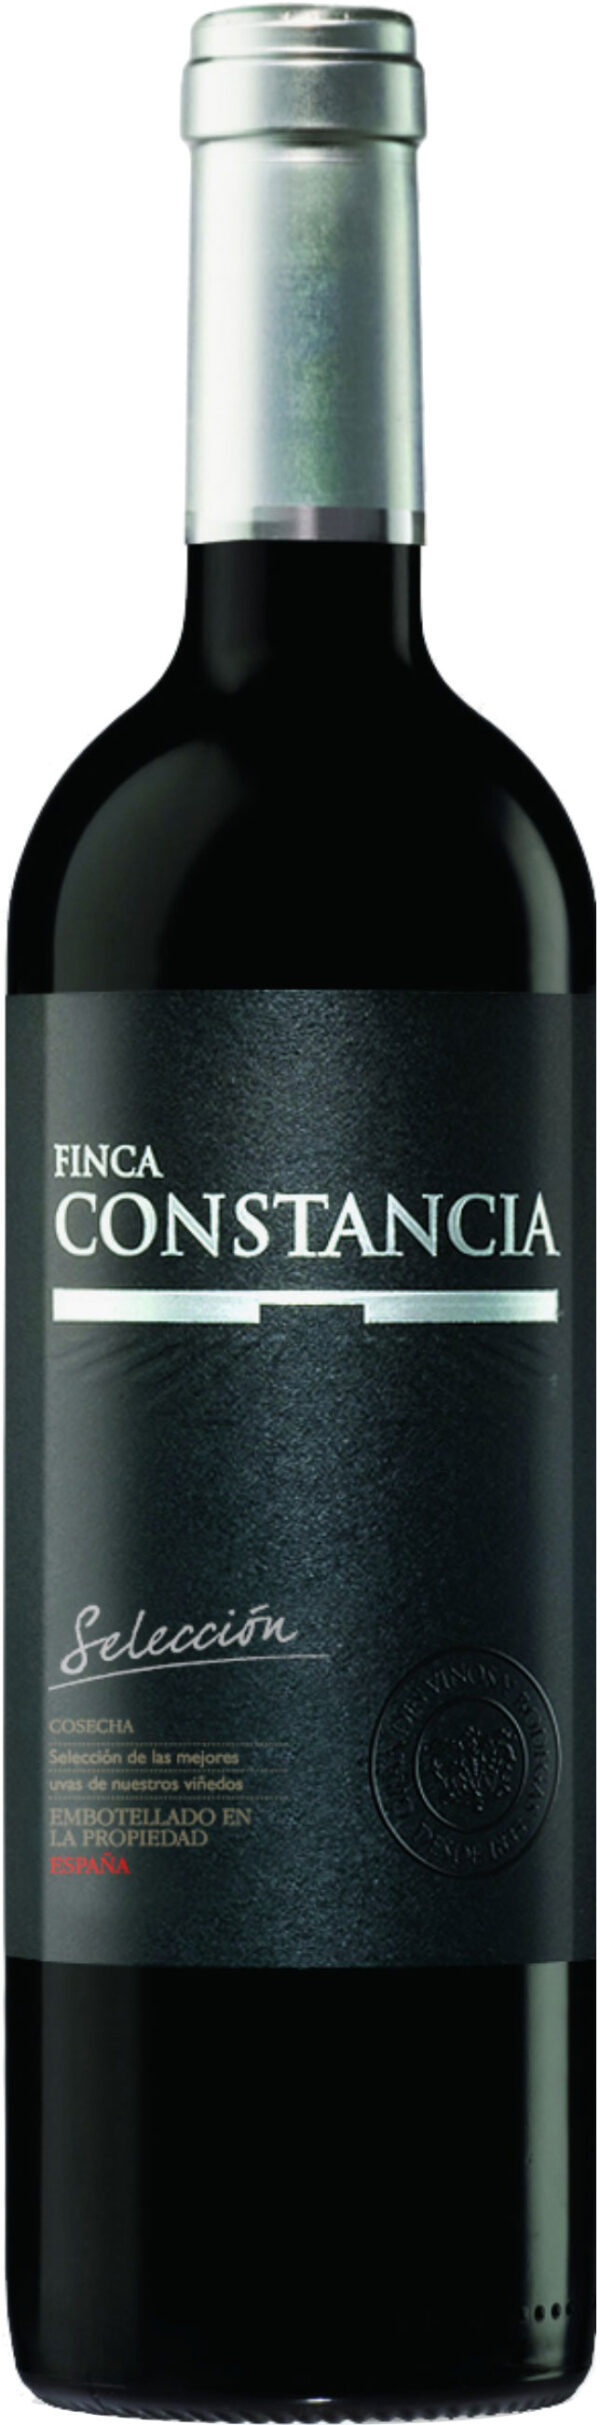 Finca Constancia - Seleccion 2015 6x 75cl Bottles